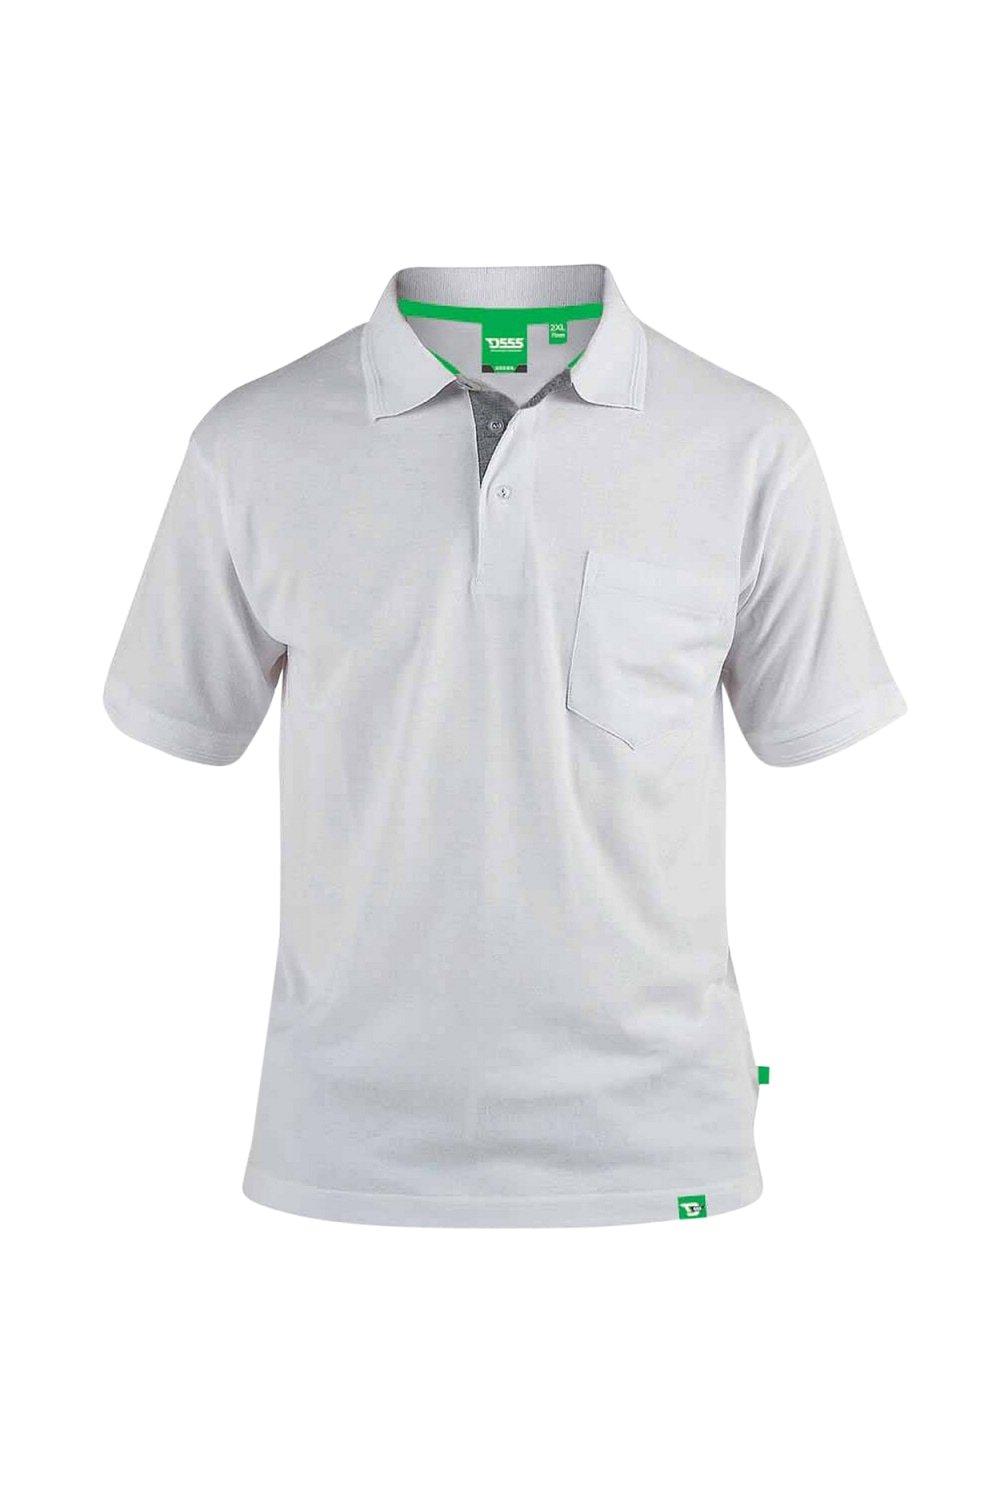 Рубашка поло из пике с нагрудным карманом Grant Duke Clothing, белый мужская повседневная спортивная рубашка поло tuveke спортивная рубашка поло с воротником стойкой и короткими рукавами высококачественная о